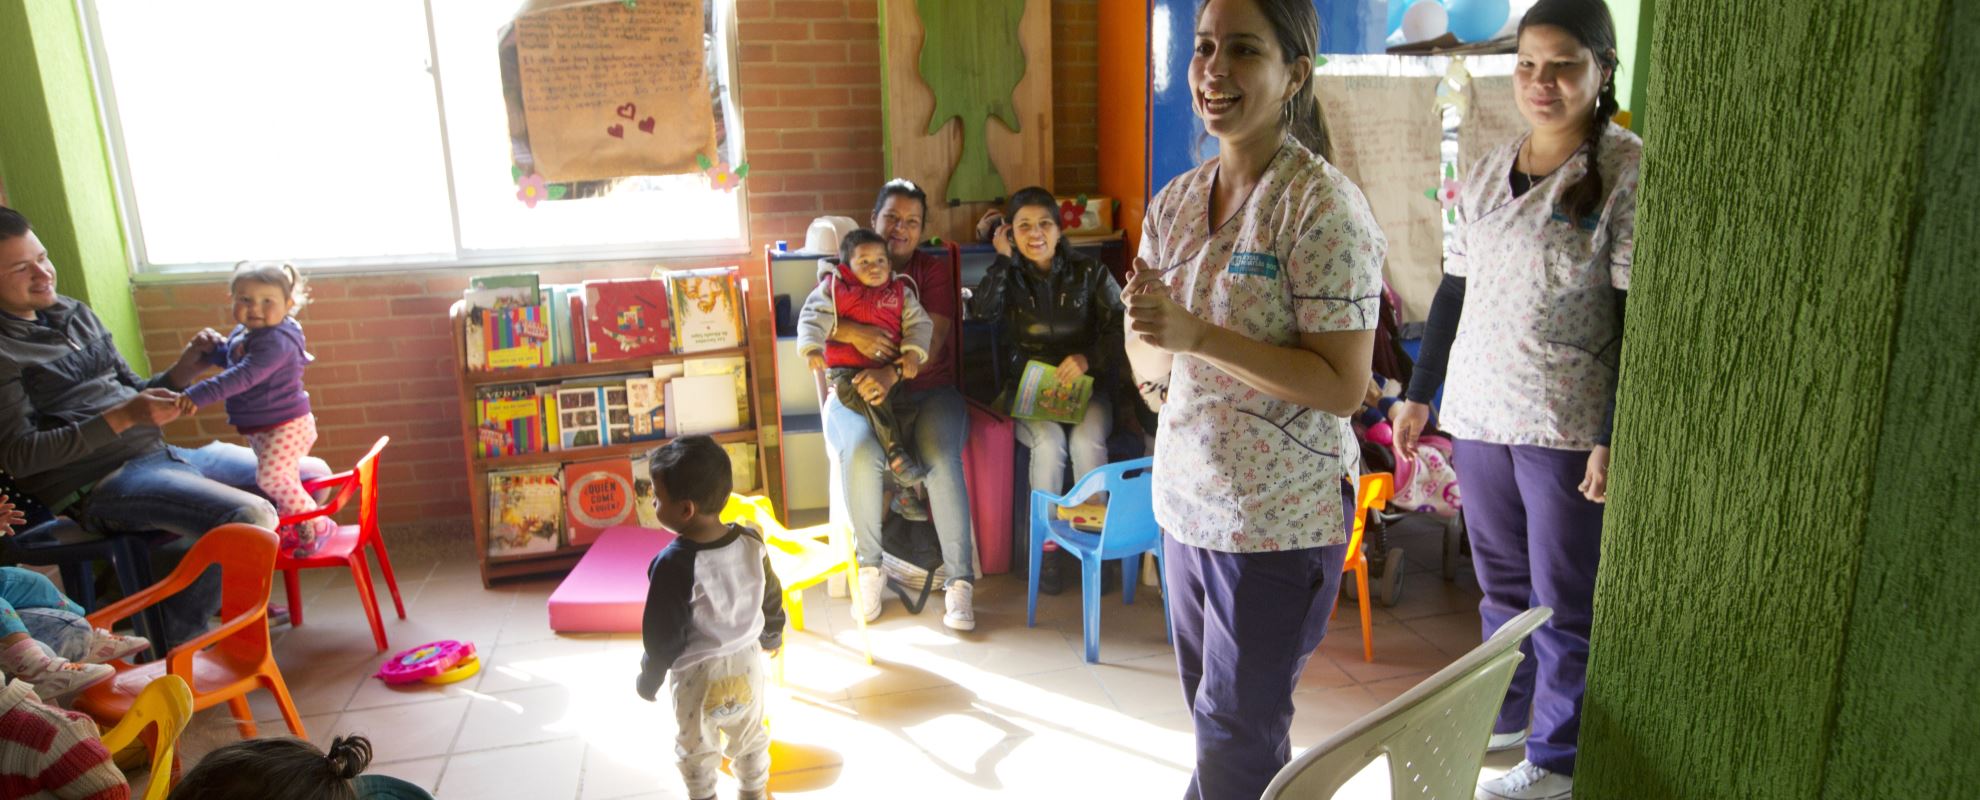 SOS-barnebyer har støttet over 42 000 barn og unge siden etableringen i Colombia i 1968. Mange har fått hjelp på våre sosialsentre, hvor lek og fysisk- og psykisk helse står på programmet. Foto: Nina Ruud